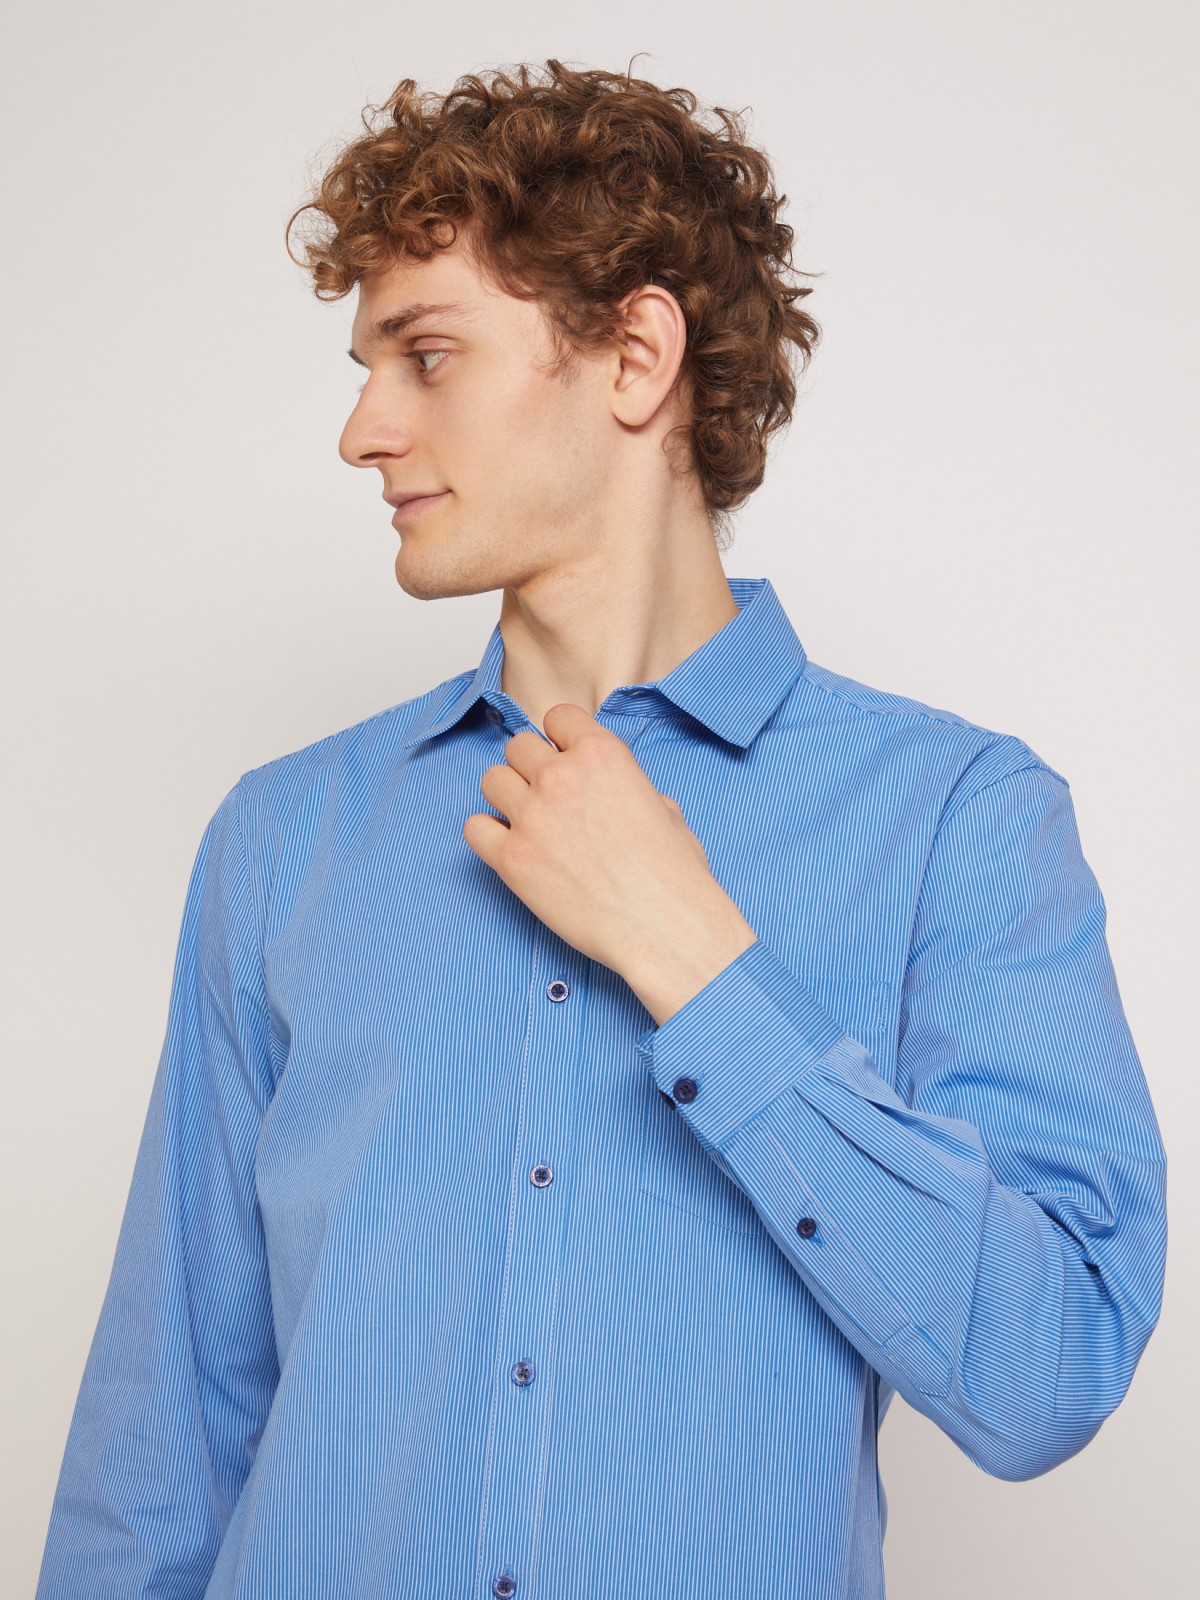 Рубашка с узором в тонкую полоску zolla 011332162012, цвет голубой, размер S - фото 3